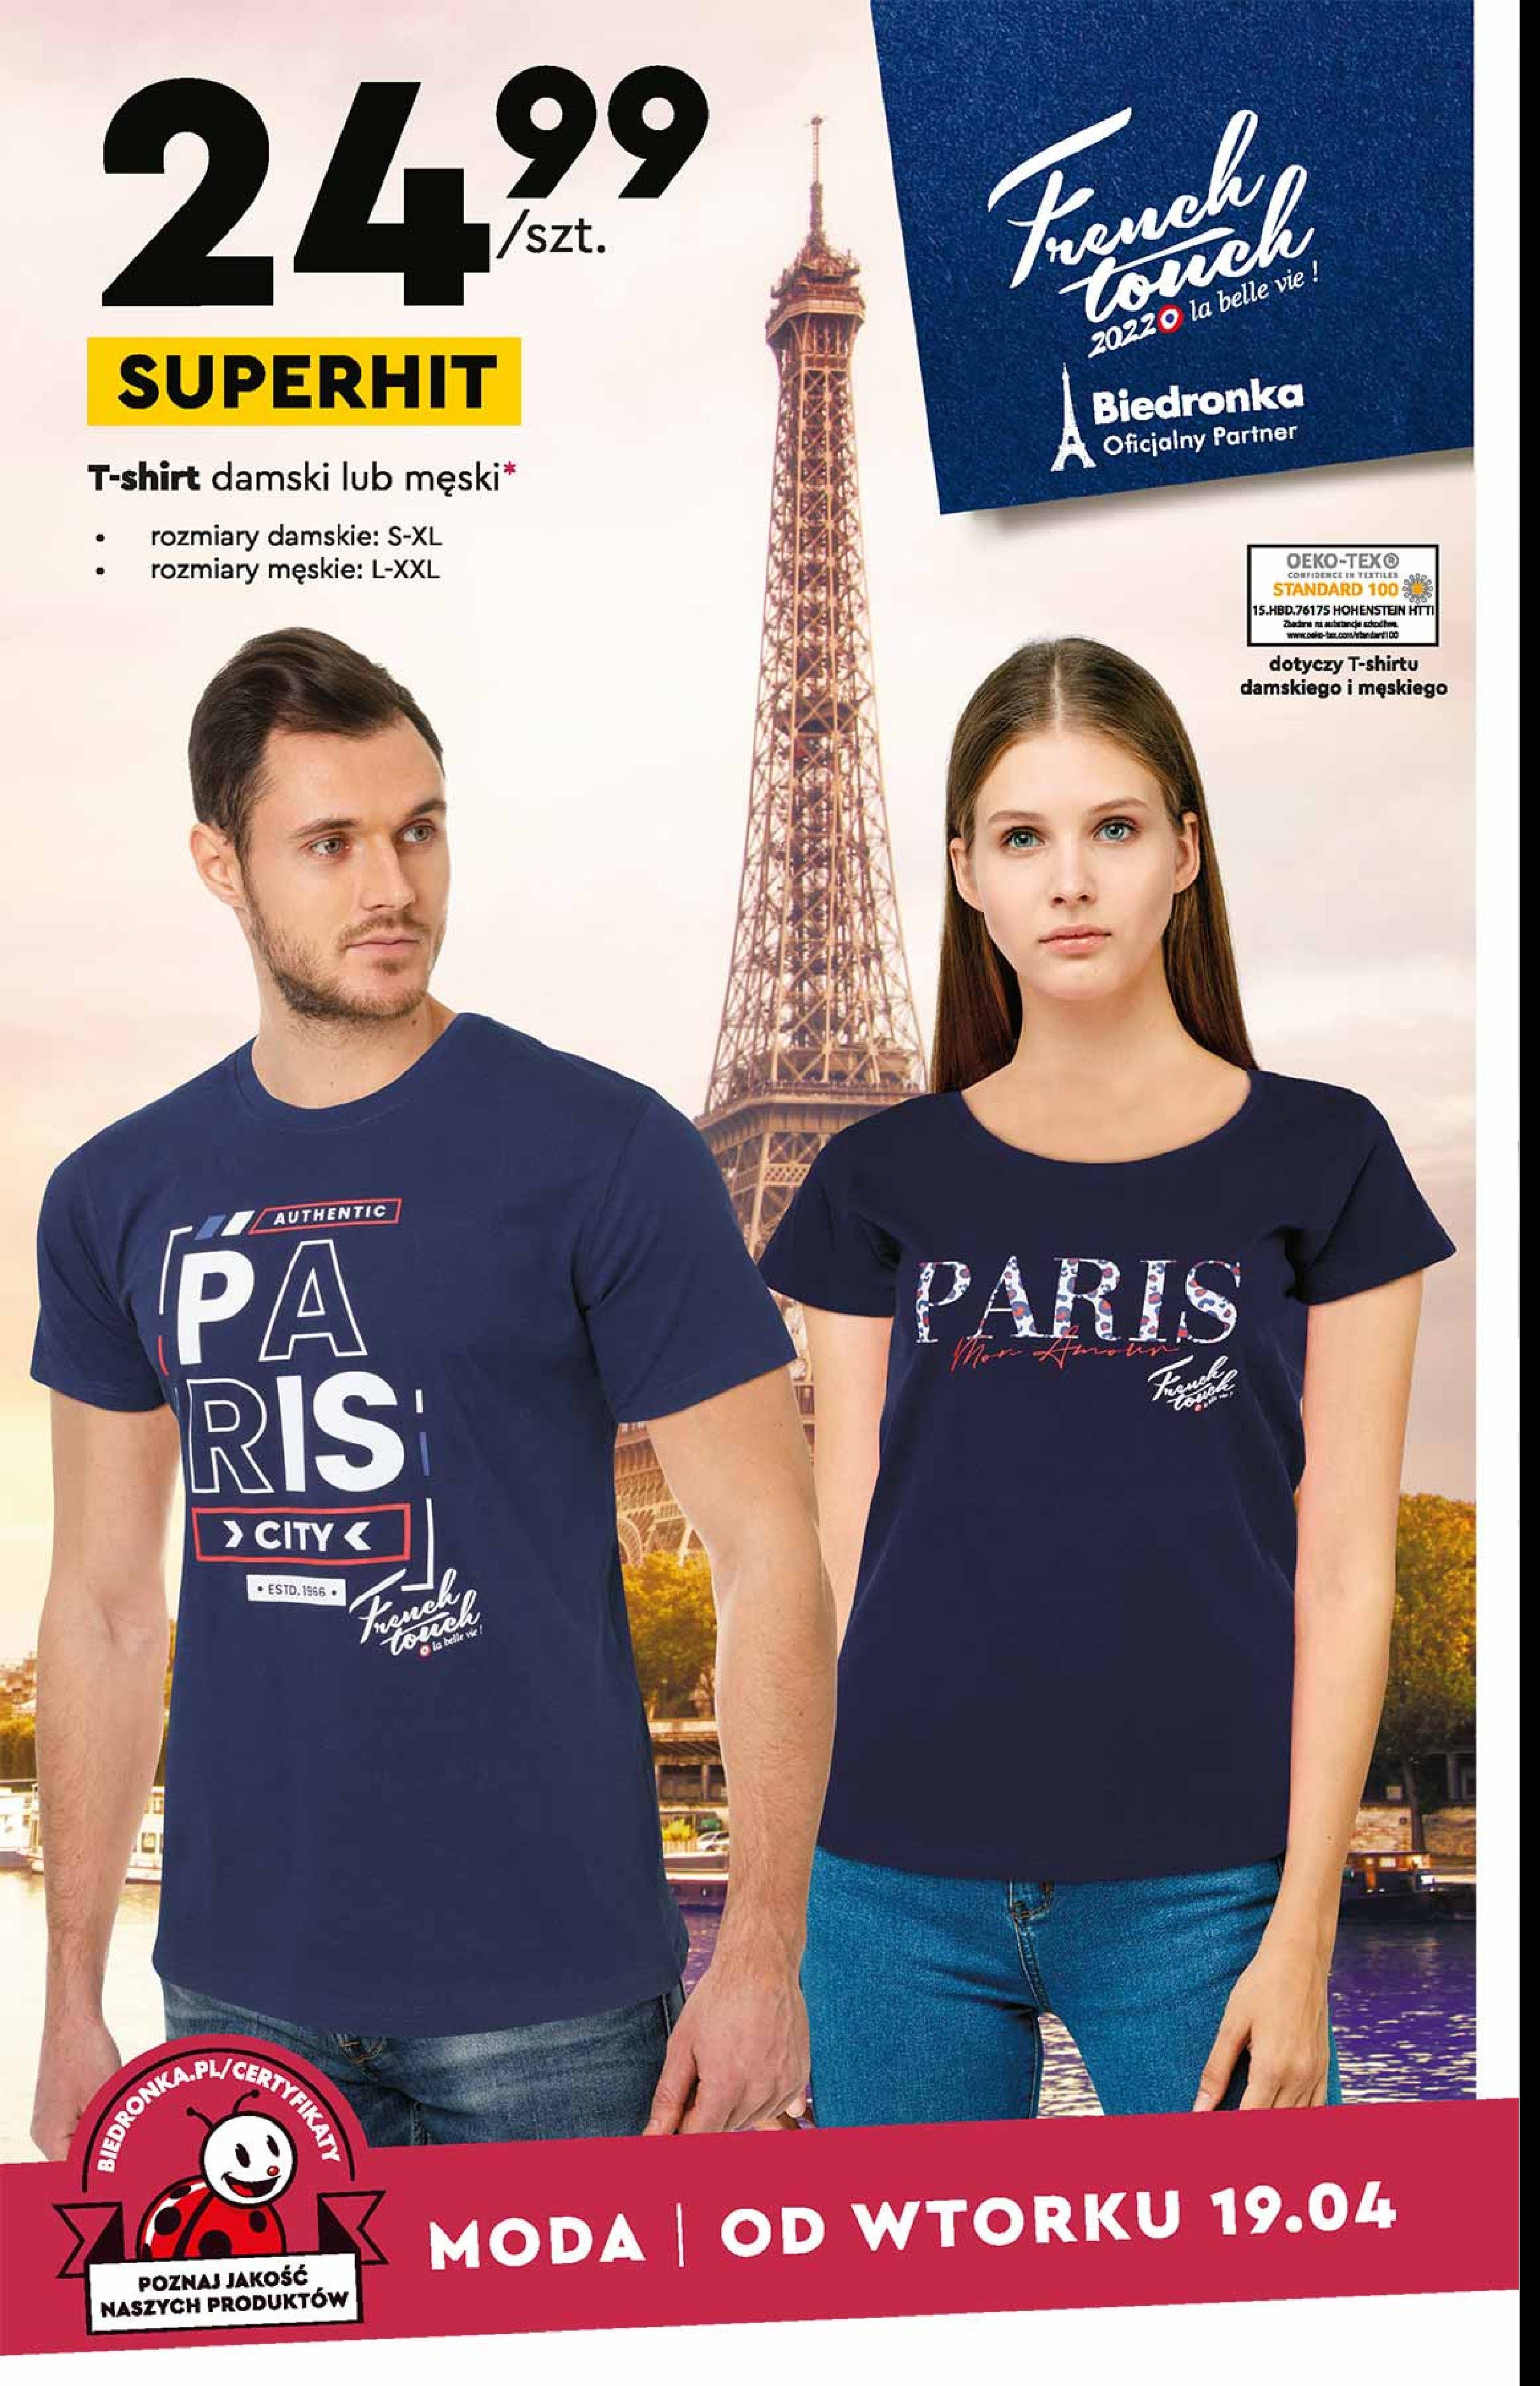 T-shirt damski paris s-xl promocja